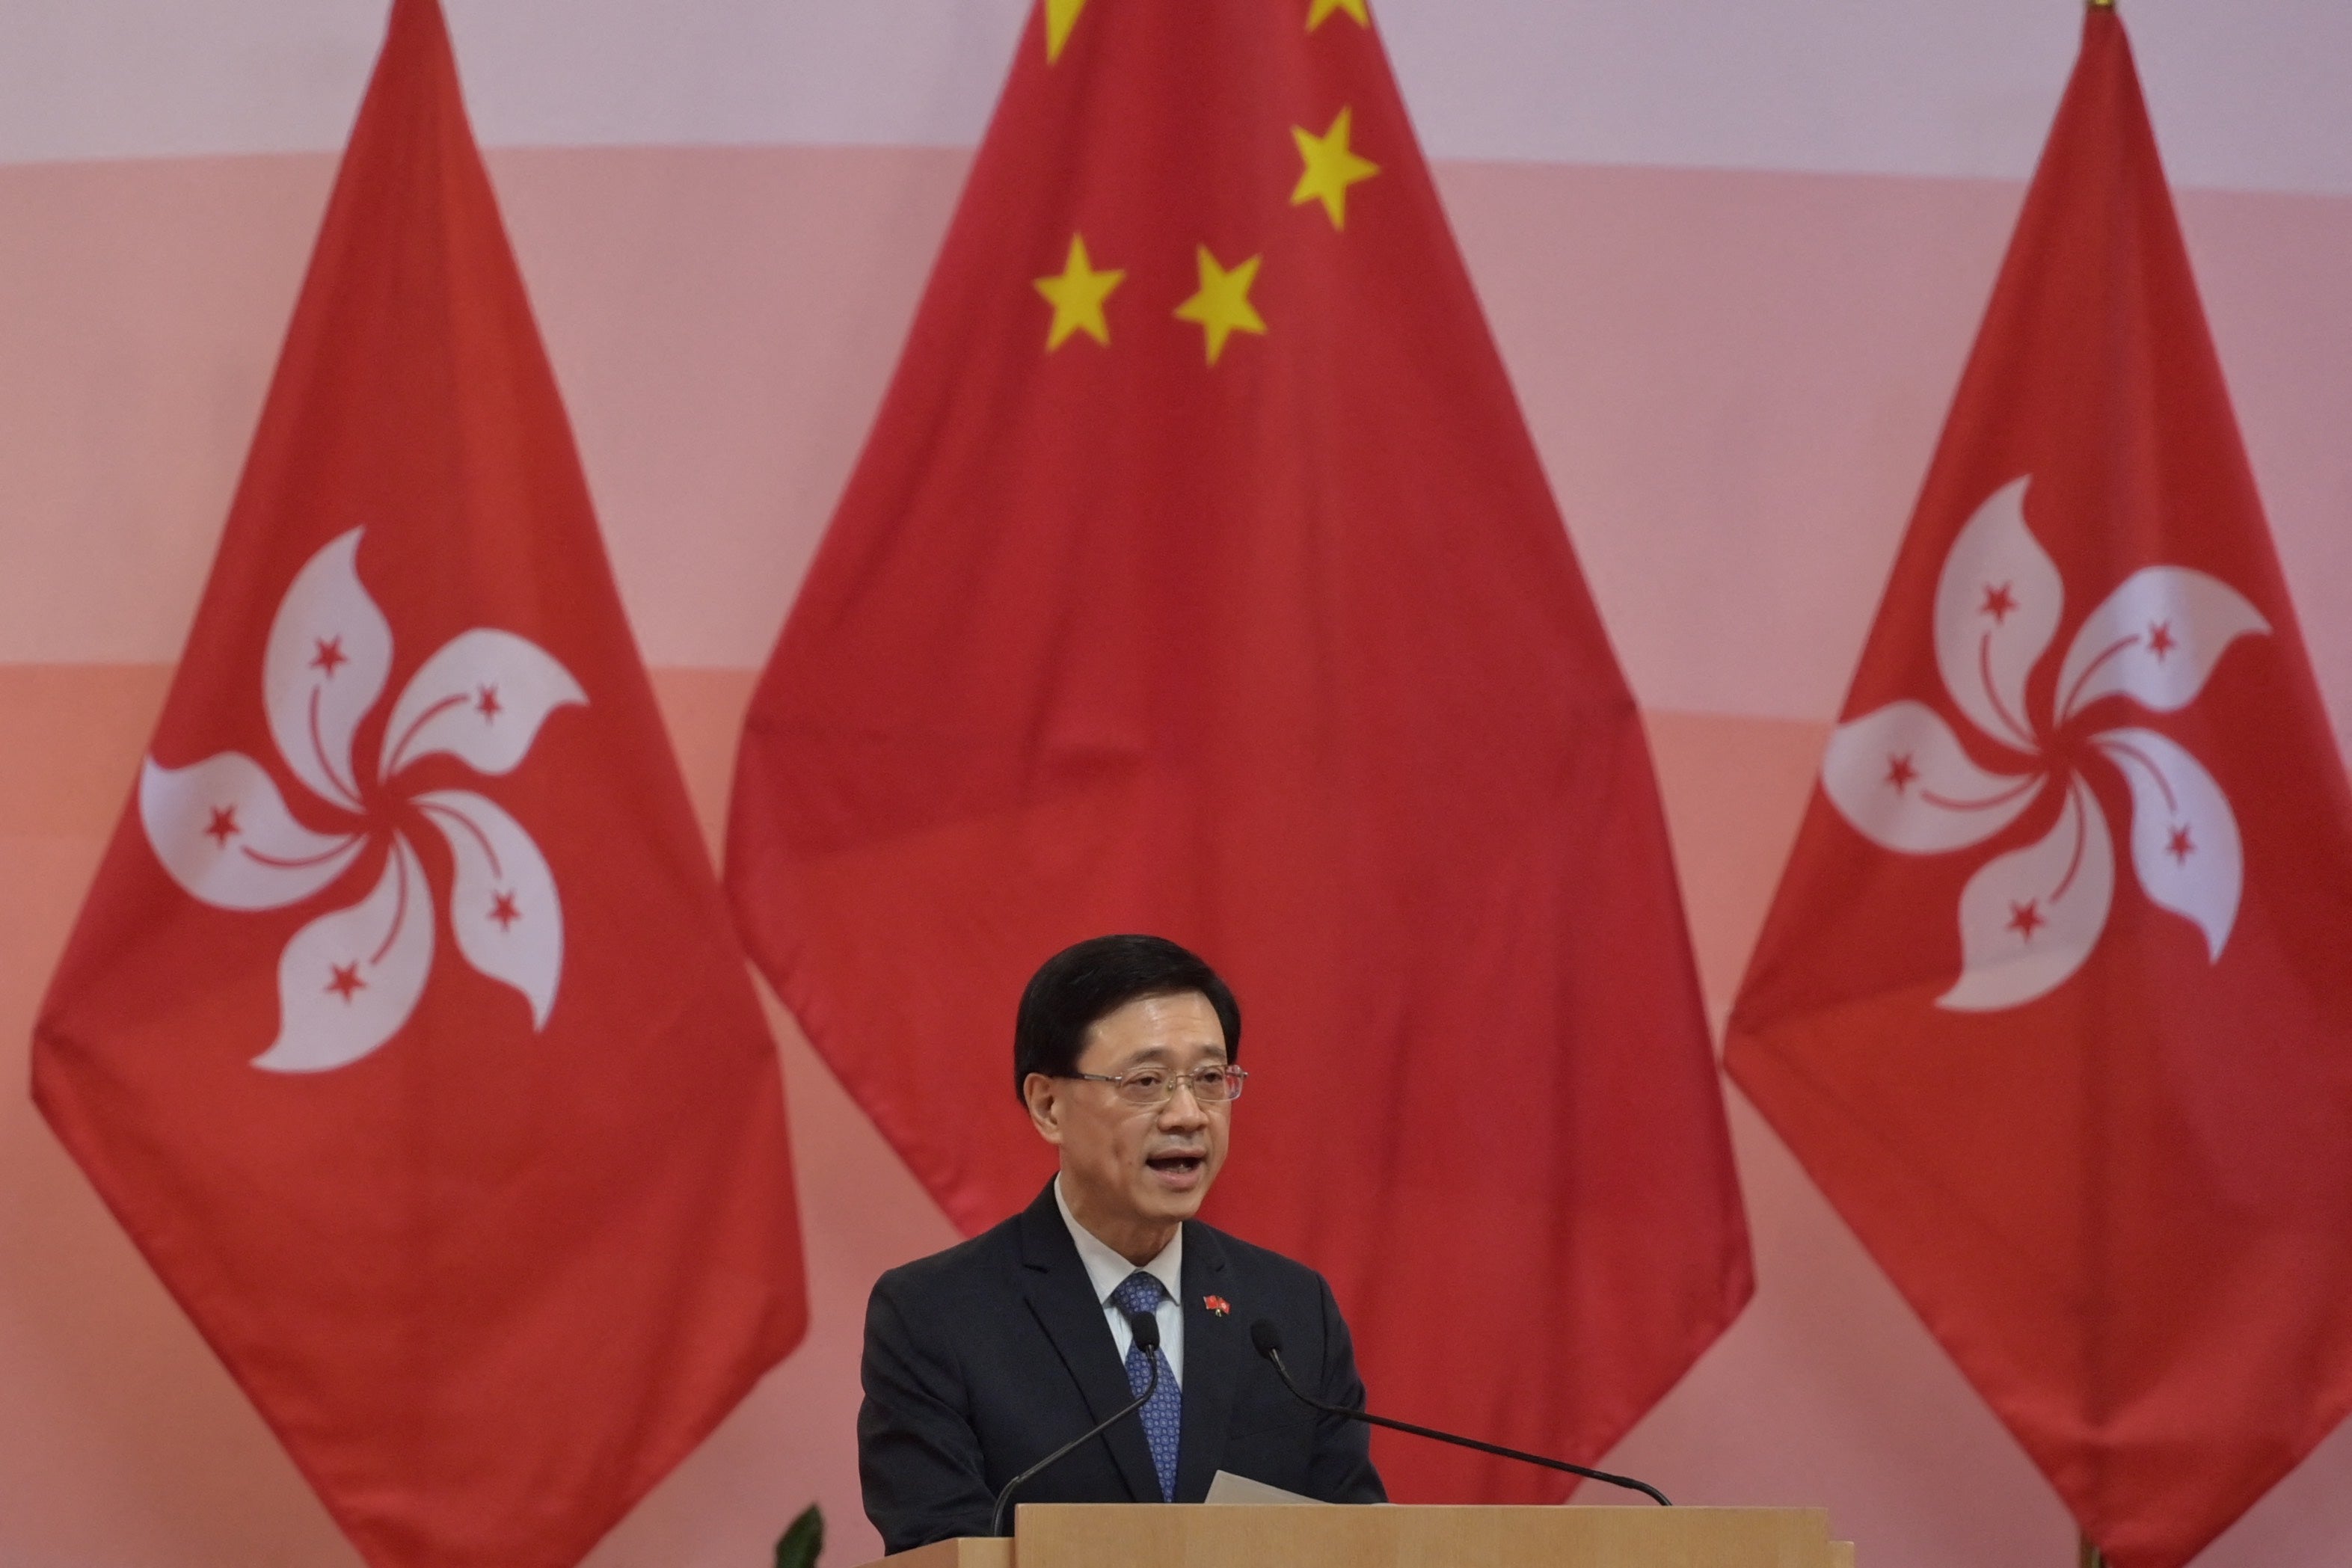 File: Hong Kong leader John Lee speaks during a flag-raising ceremony